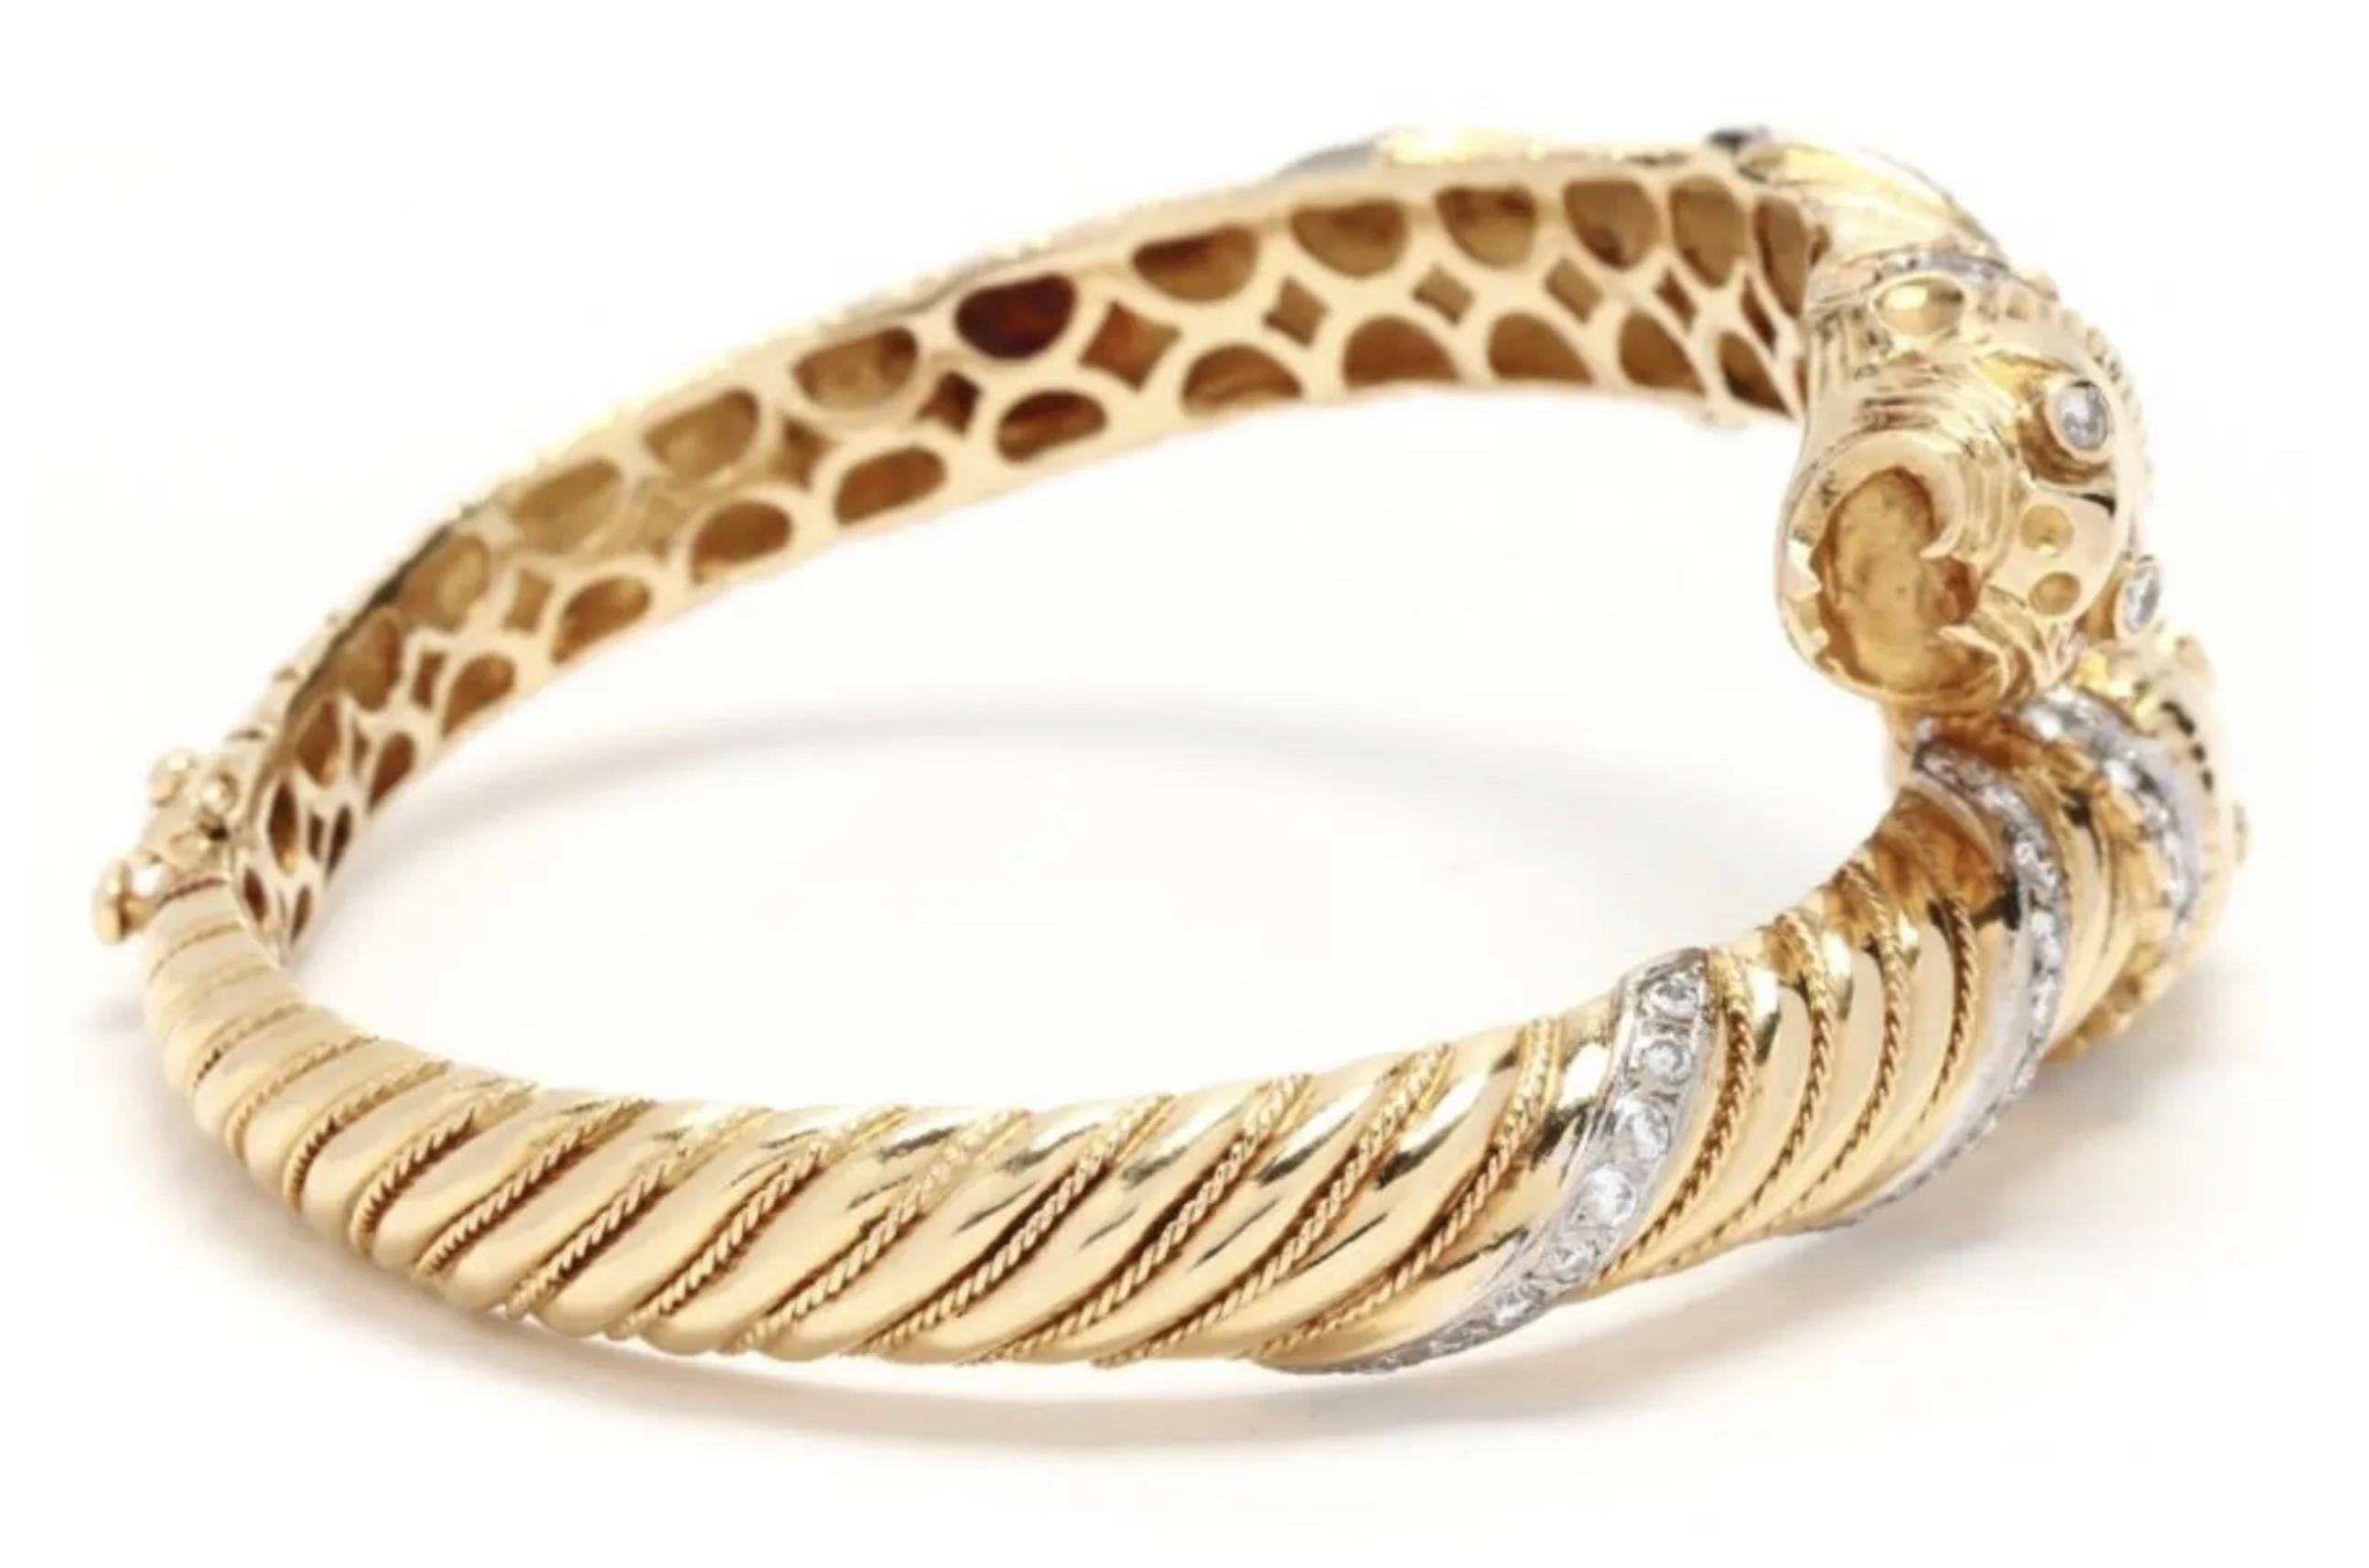 Incroyable bracelet en or 18k et diamant (approx 1.68 ctw) double chimère tête de panthère. Il est composé d'une quantité importante de diamants et d'un or massif de 18 carats, d'un savoir-faire vraiment impressionnant - c'est une pièce de grande